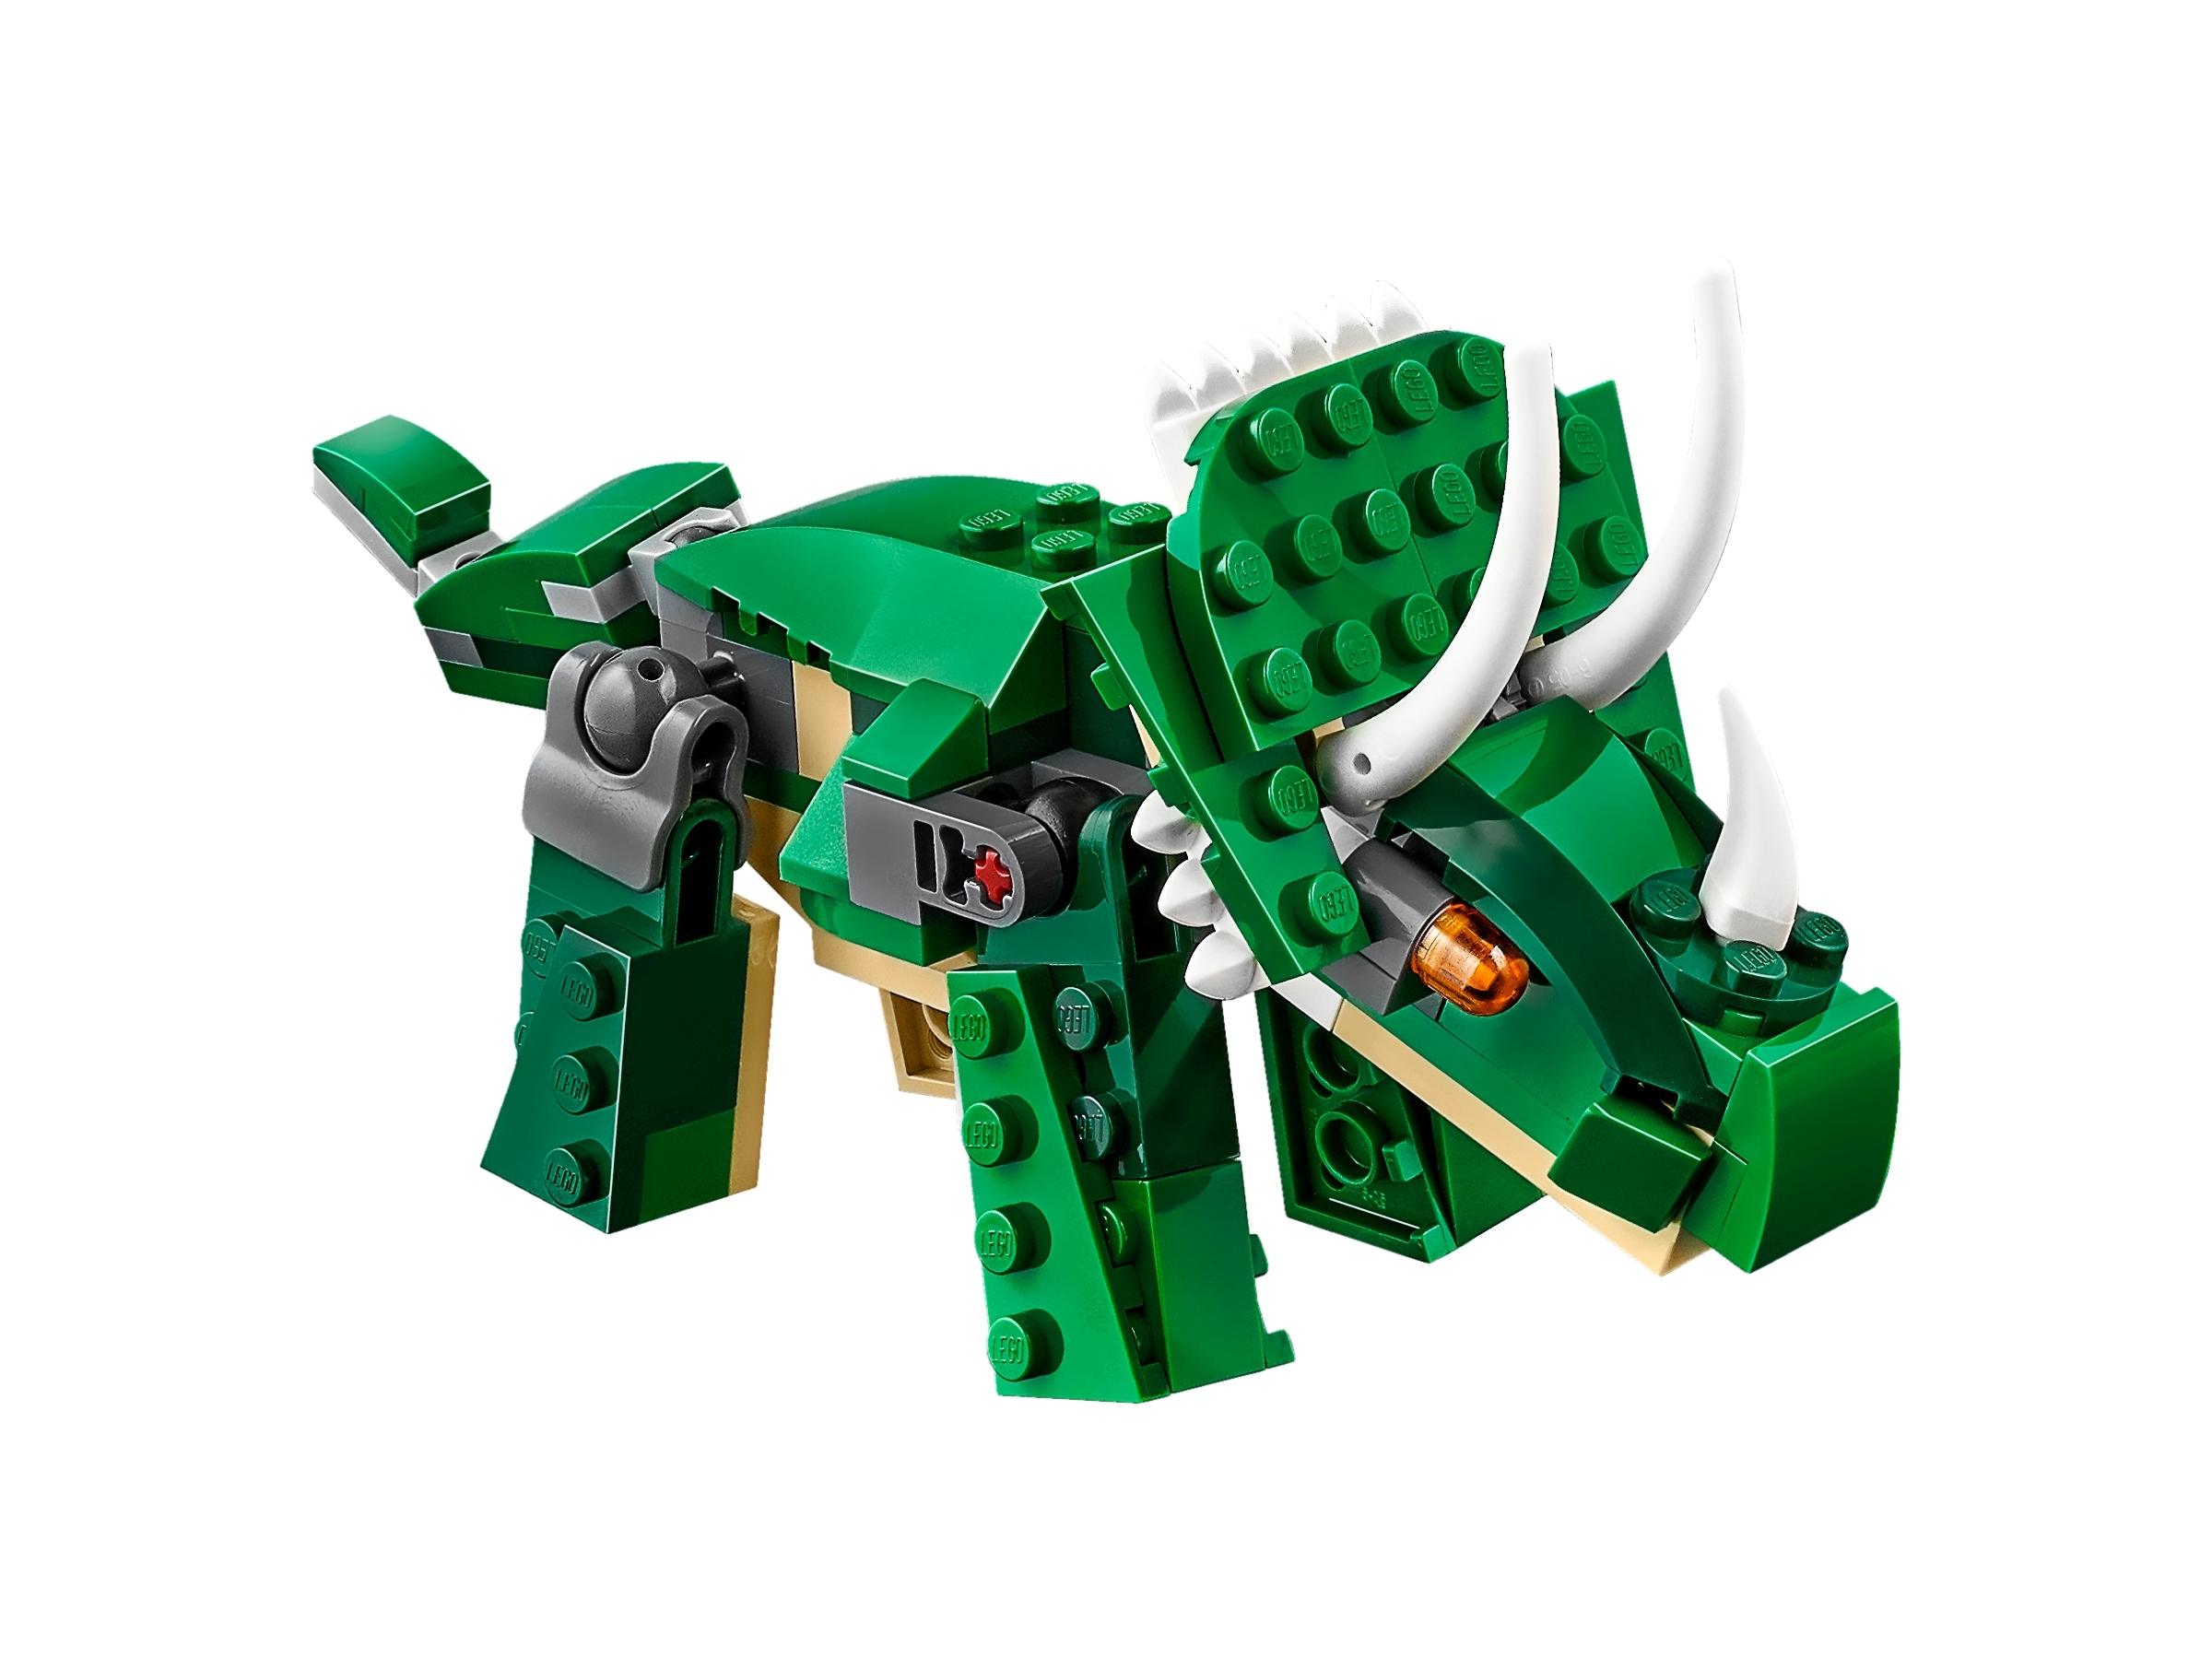 Lego 31058 Creator Mighty dinosaurios de juguete 3 en 1 Modelo Dinosaurio Triceratops y